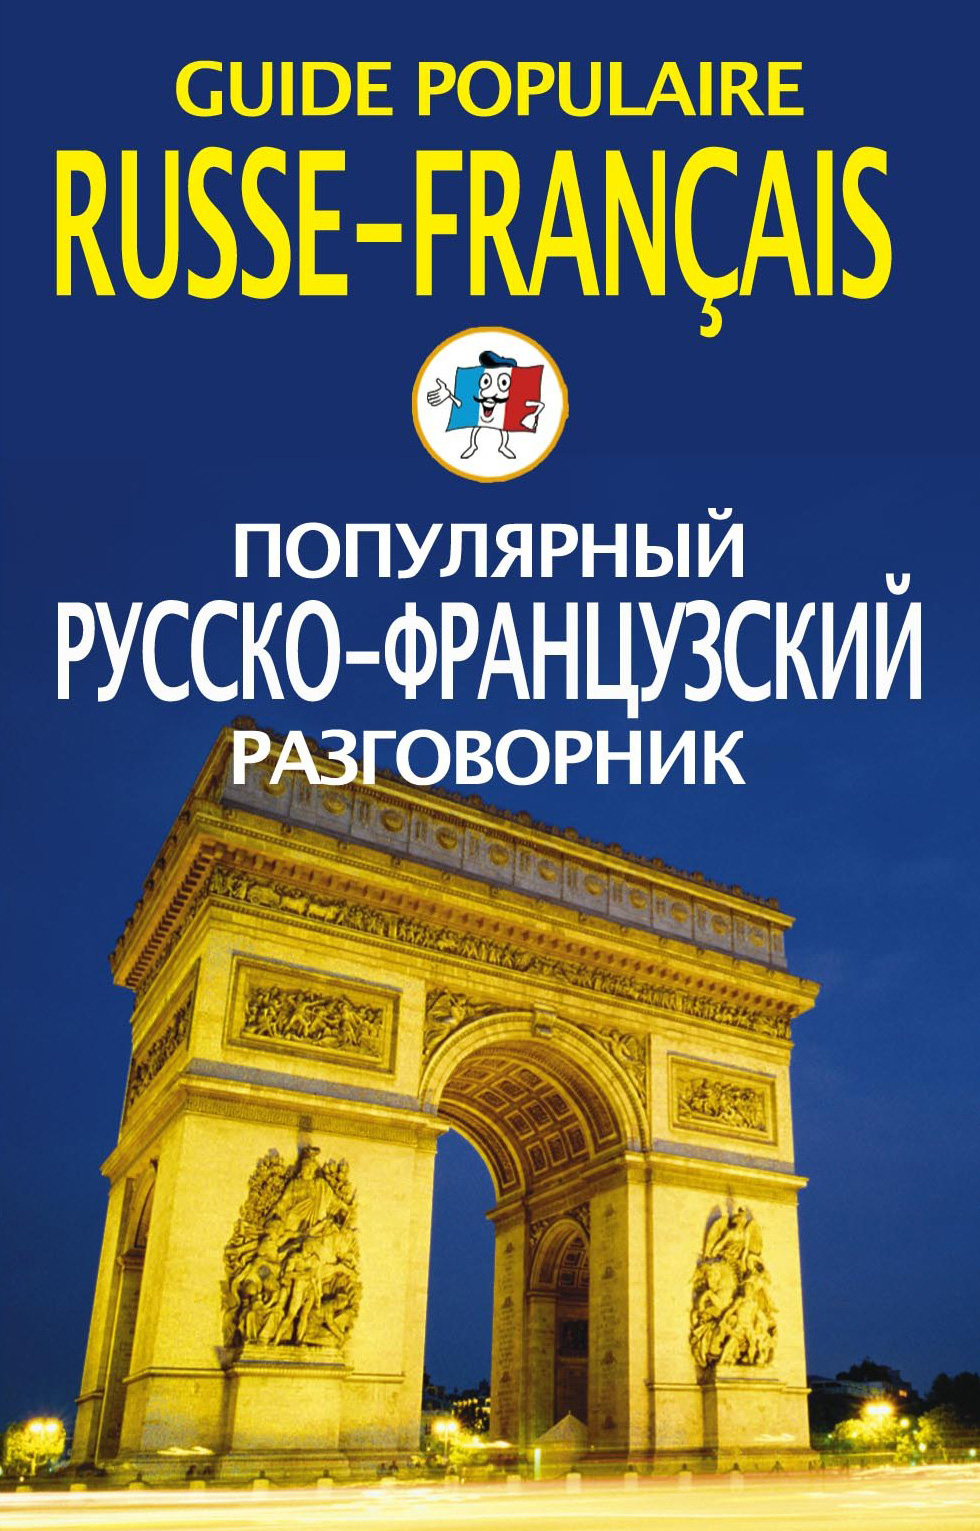 Е. В. Смирнова - «Популярный русско-французский разговорник / Guide populaire russe-francais»